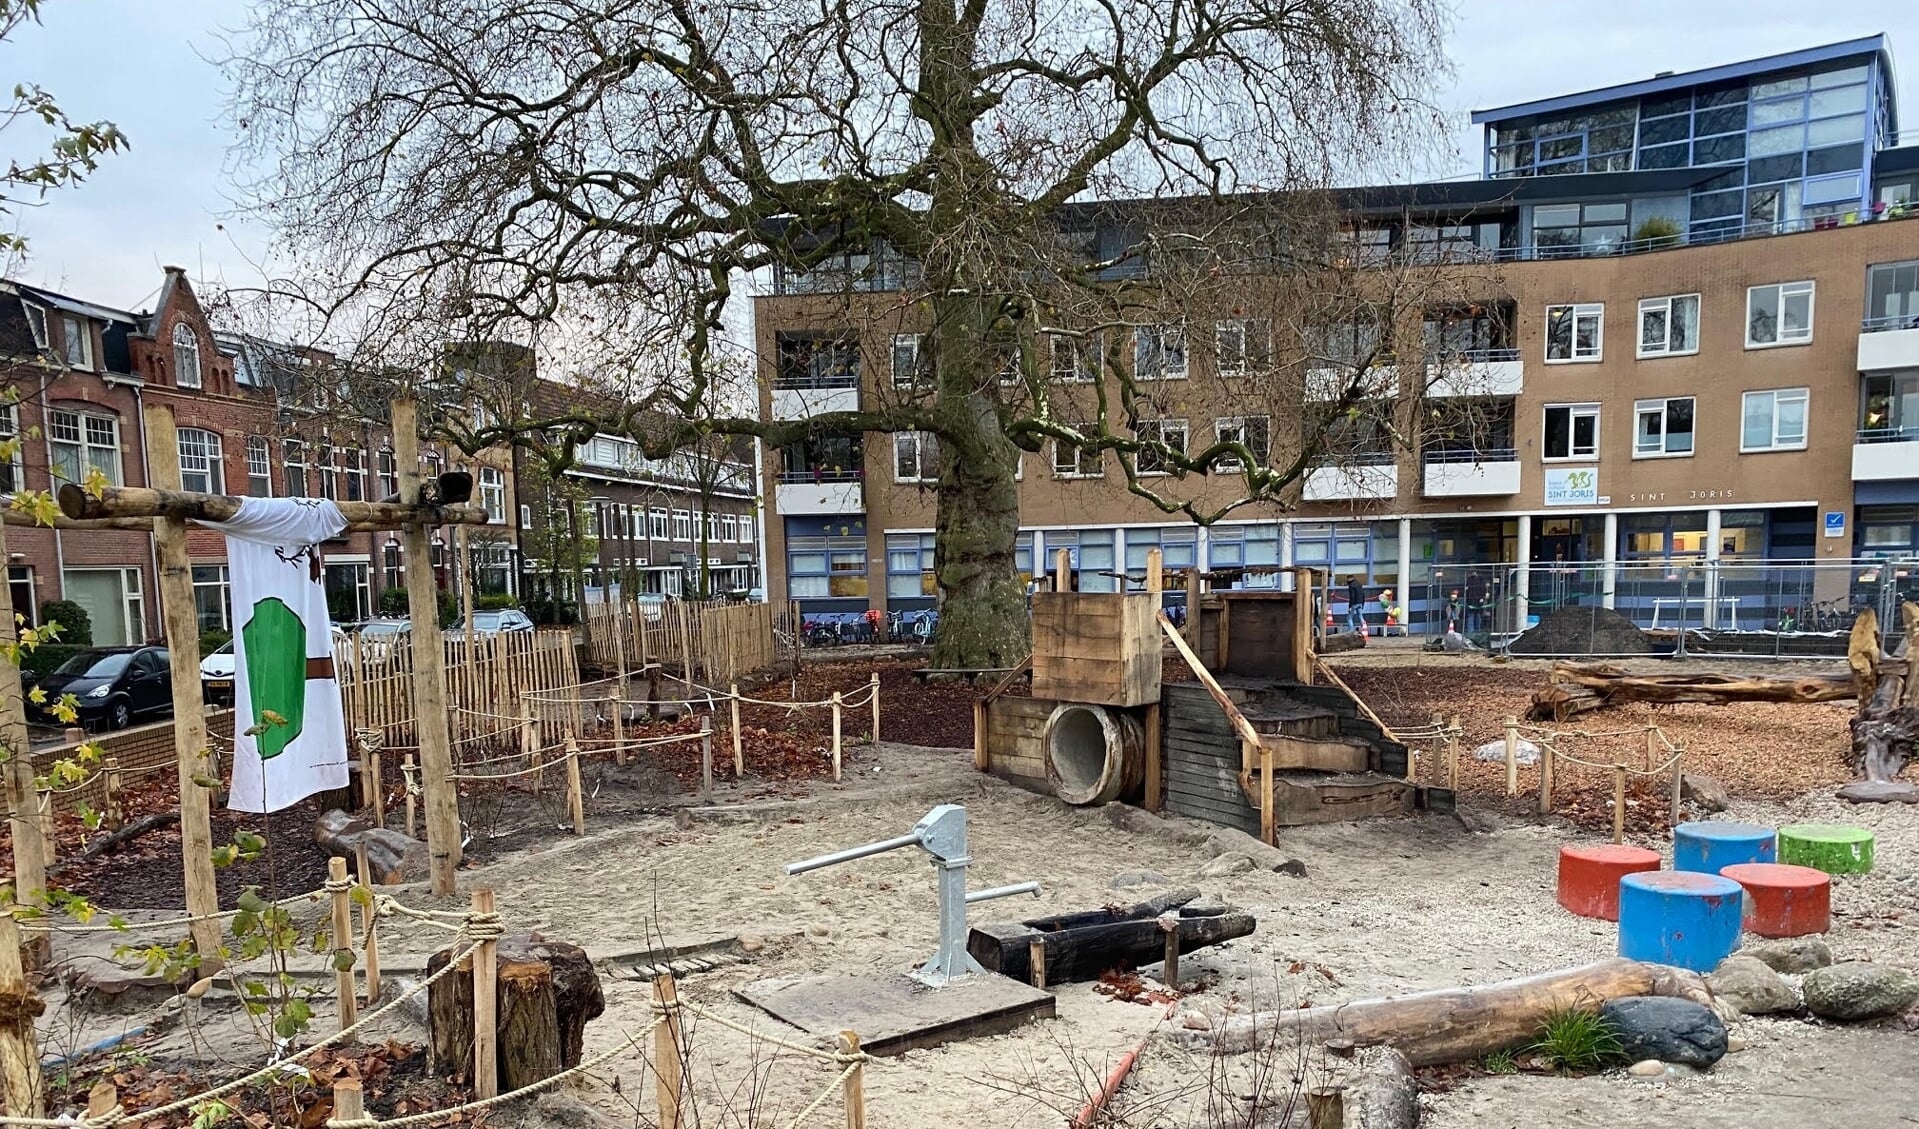 Basisschool Sint Joris opende vorig jaar december een vernieuwd speelplein: tegels zijn nagenoeg verdwenen, er is een waterpomp, afgeschermd voetbalveld, klimboomstammen, volop zand én heel veel boomschors.